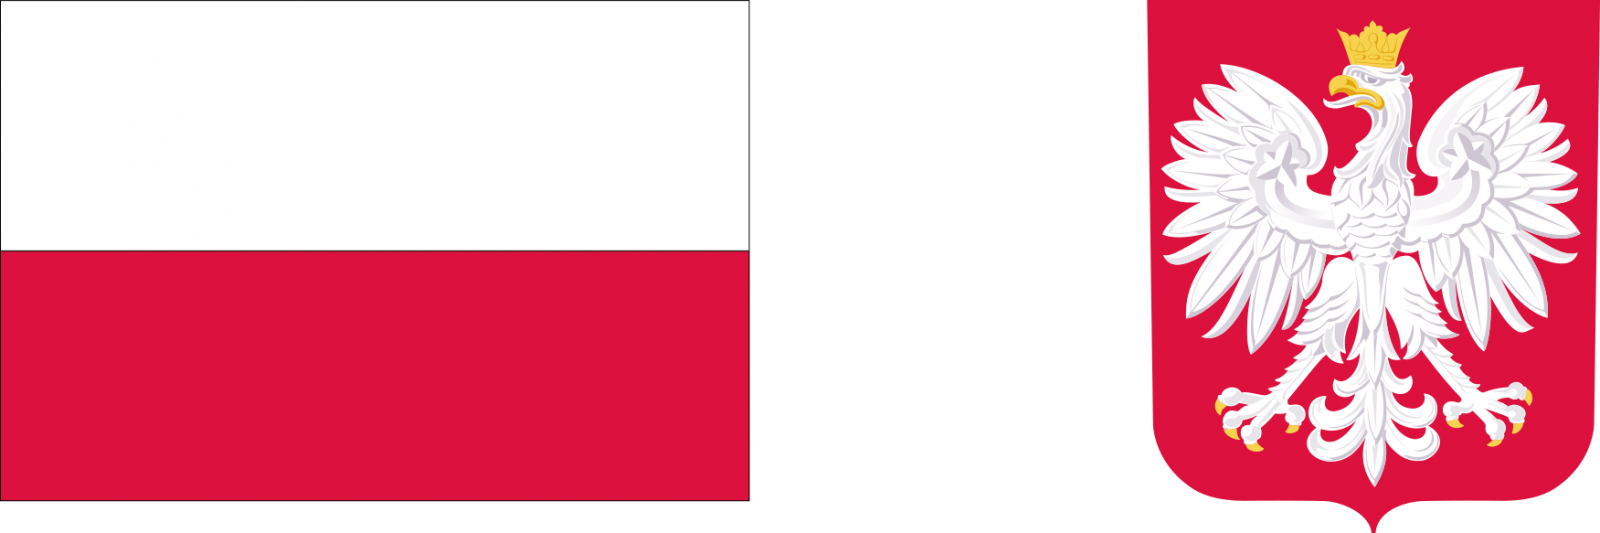 Flaga biało-czerwona i głodło Polski